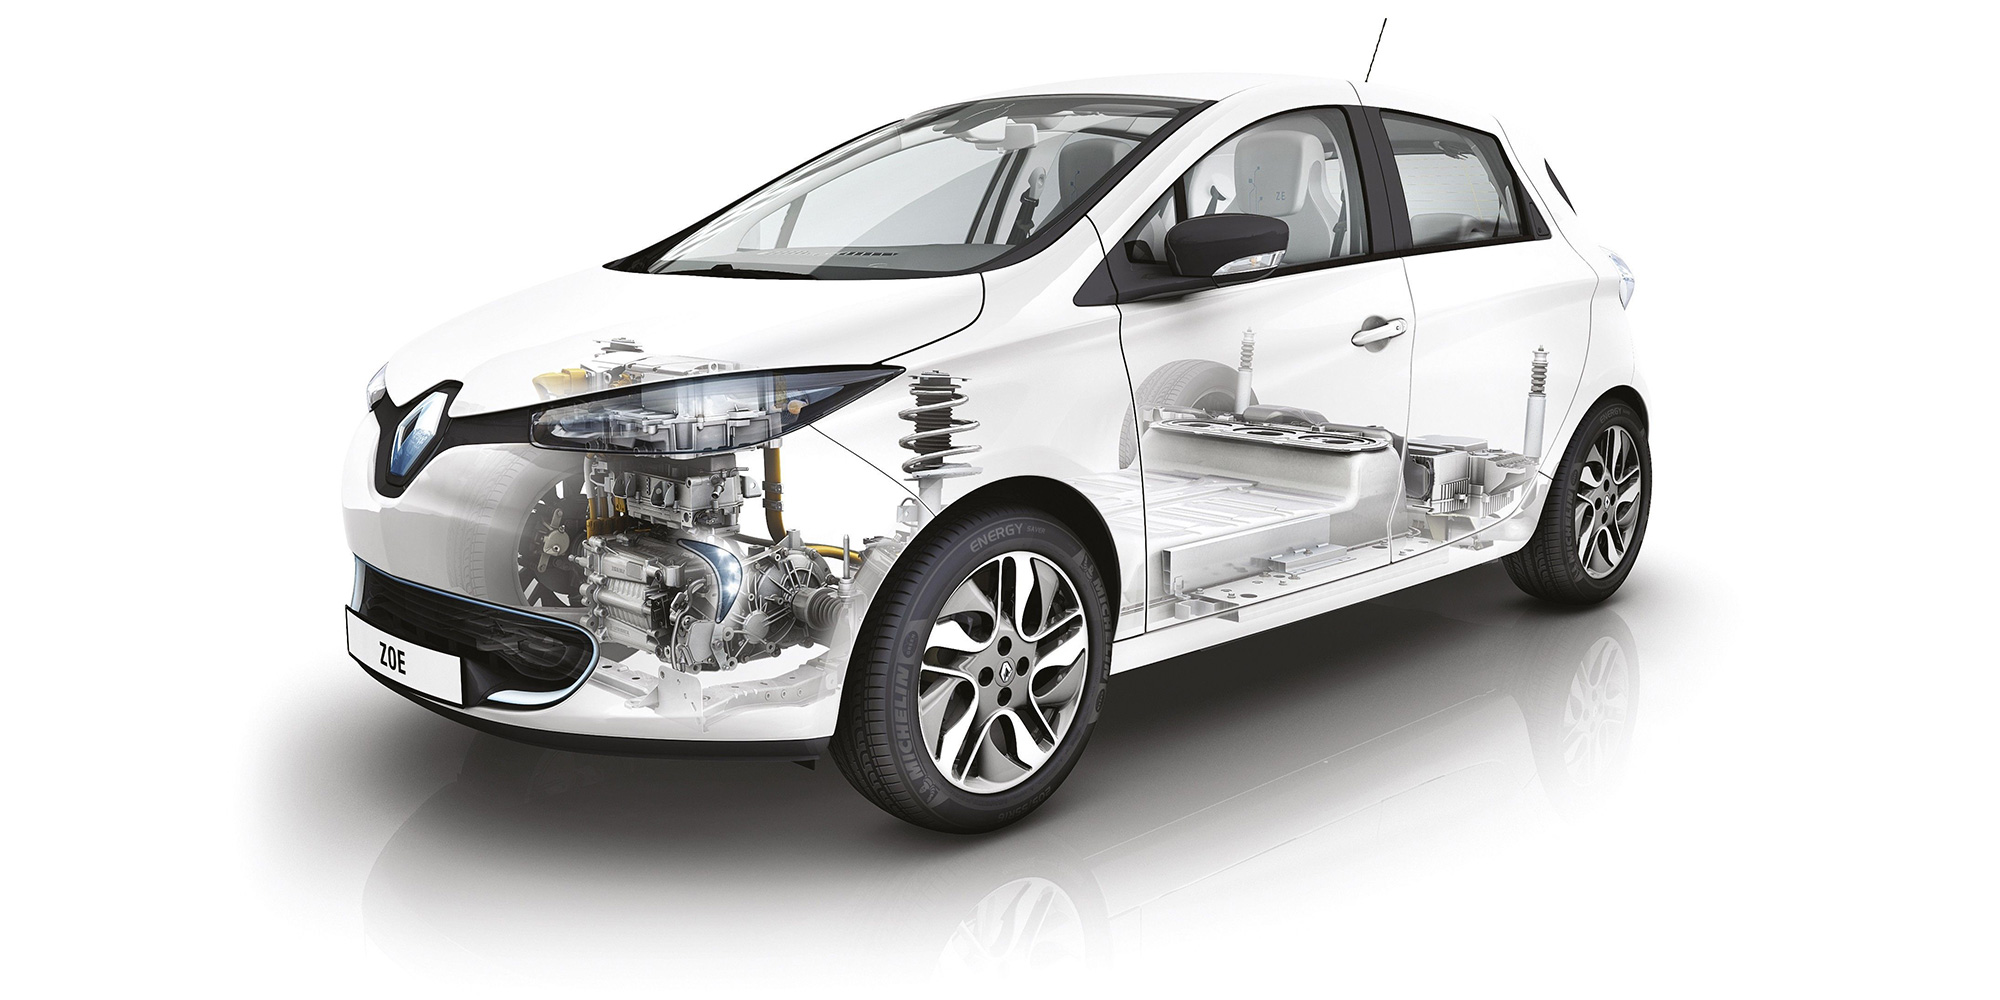 Renault ZOE meistert Härtetest unter Extrembedingungen